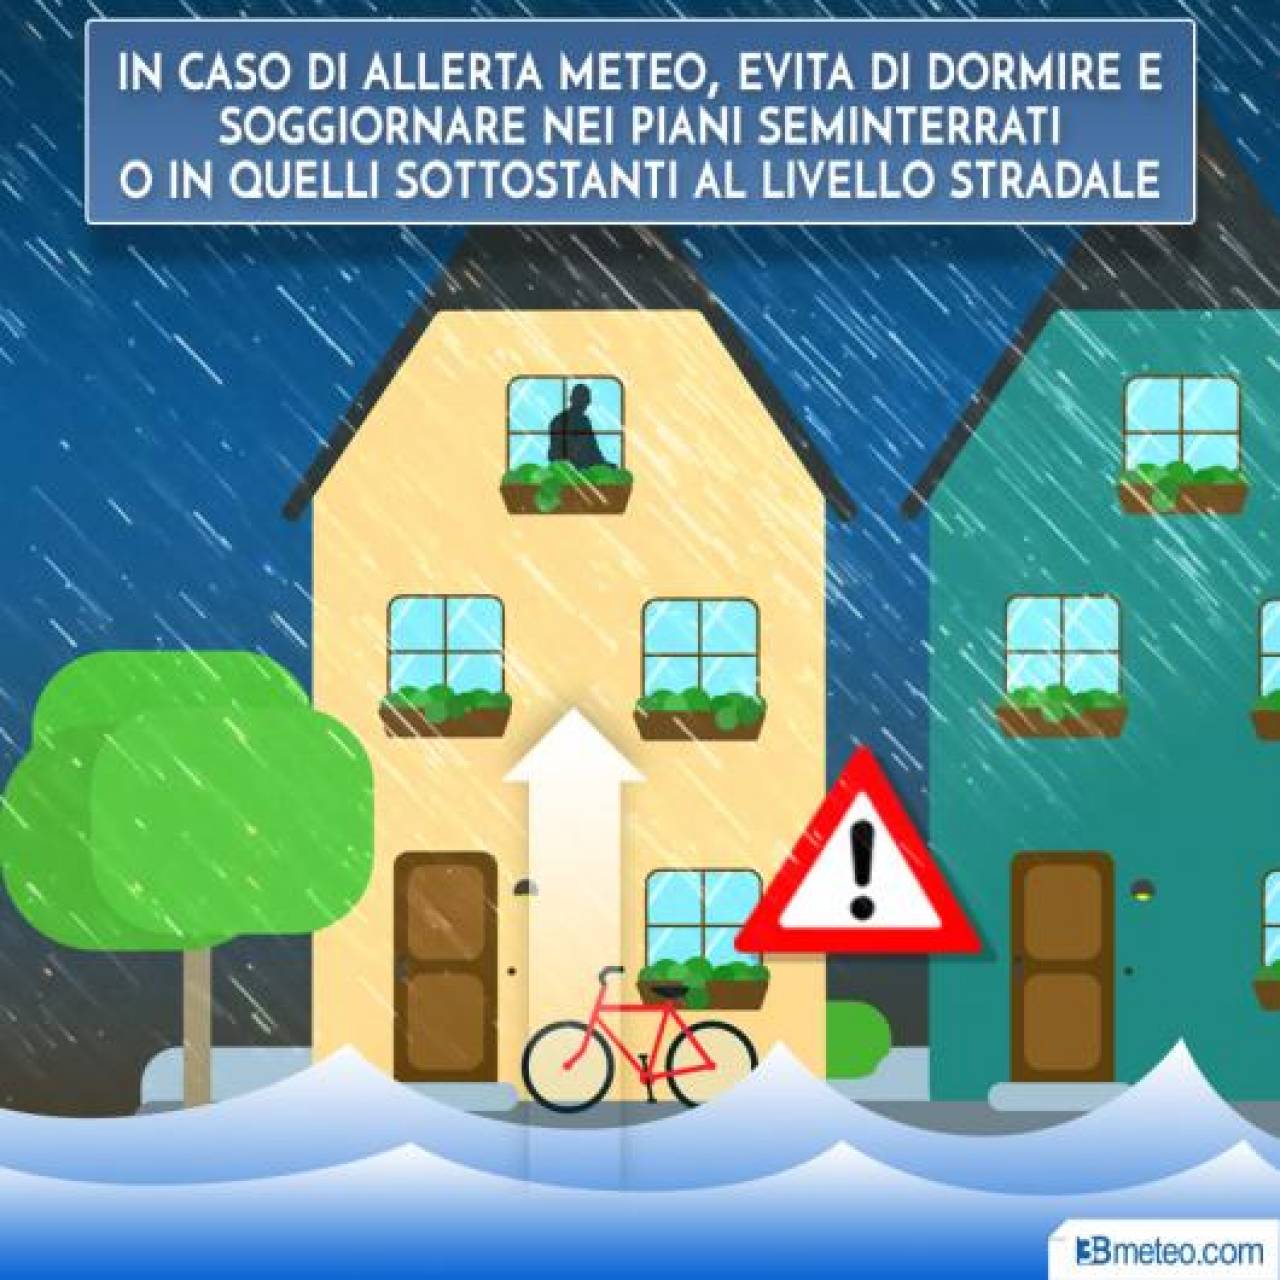 Meteo: NUBIFRAGIO E ALLUVIONE in Italia; come comportarsi per evitare gravi pericoli in caso di maltempo